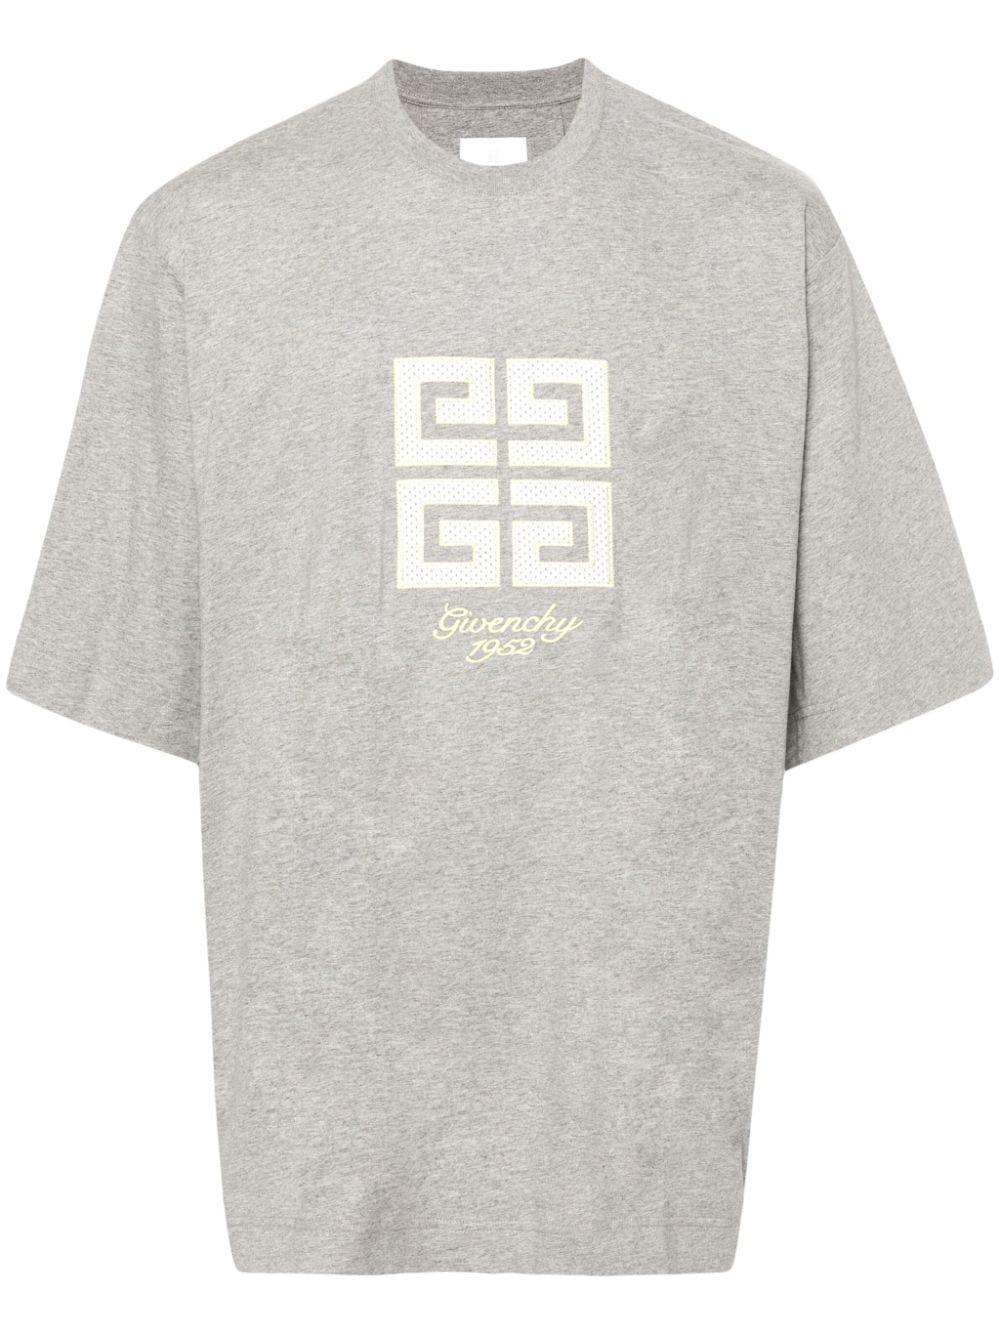 男士淡灰色T恤 - FW24系列